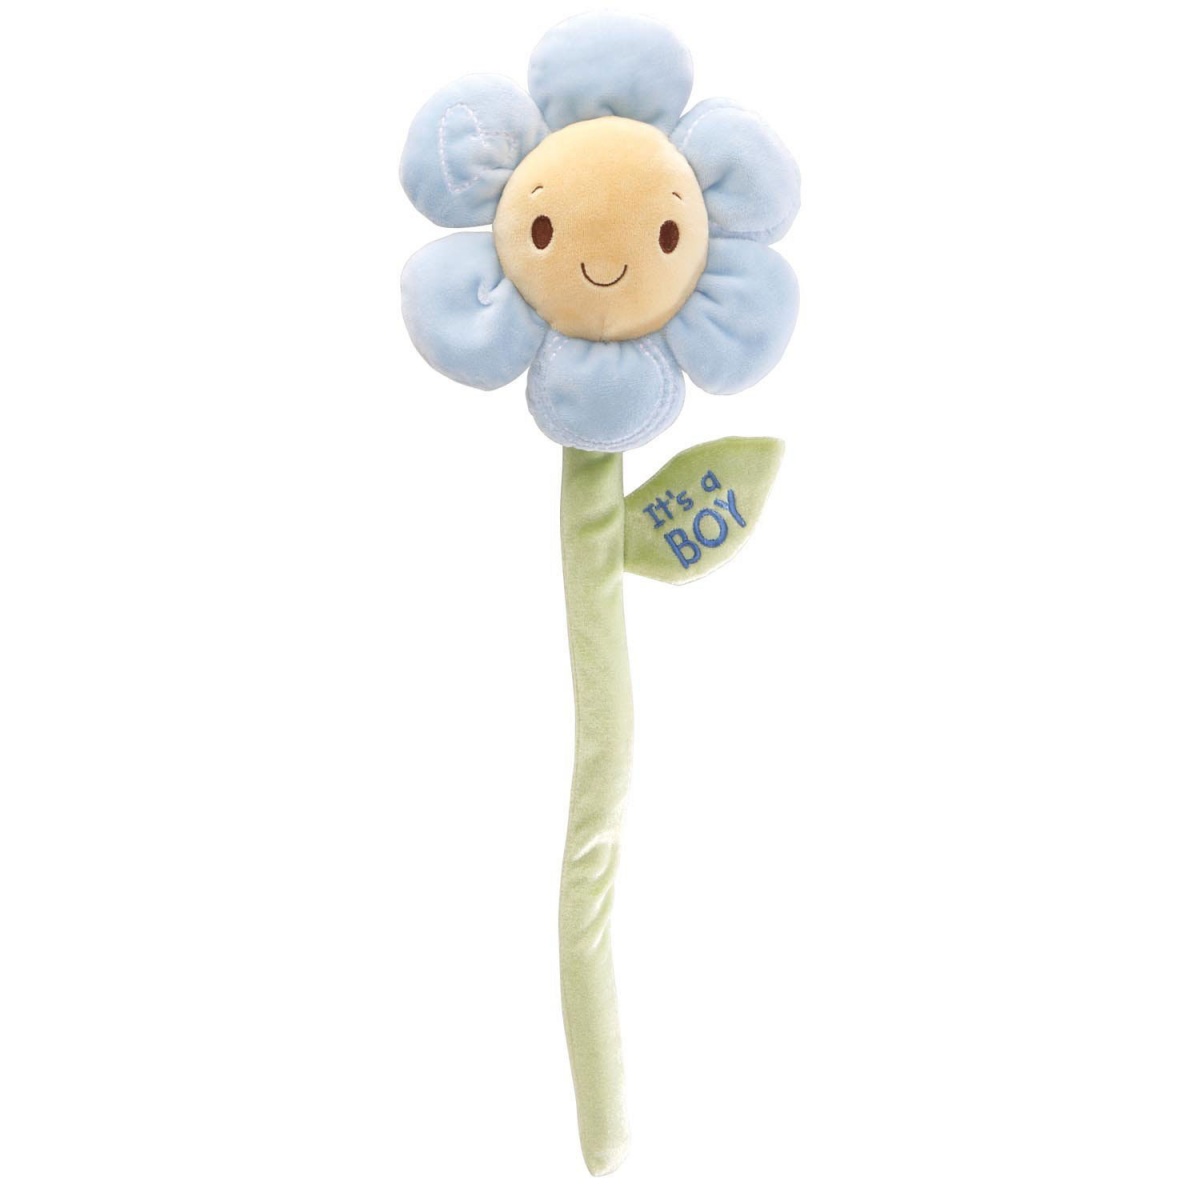 It is a Boy Plush Flower